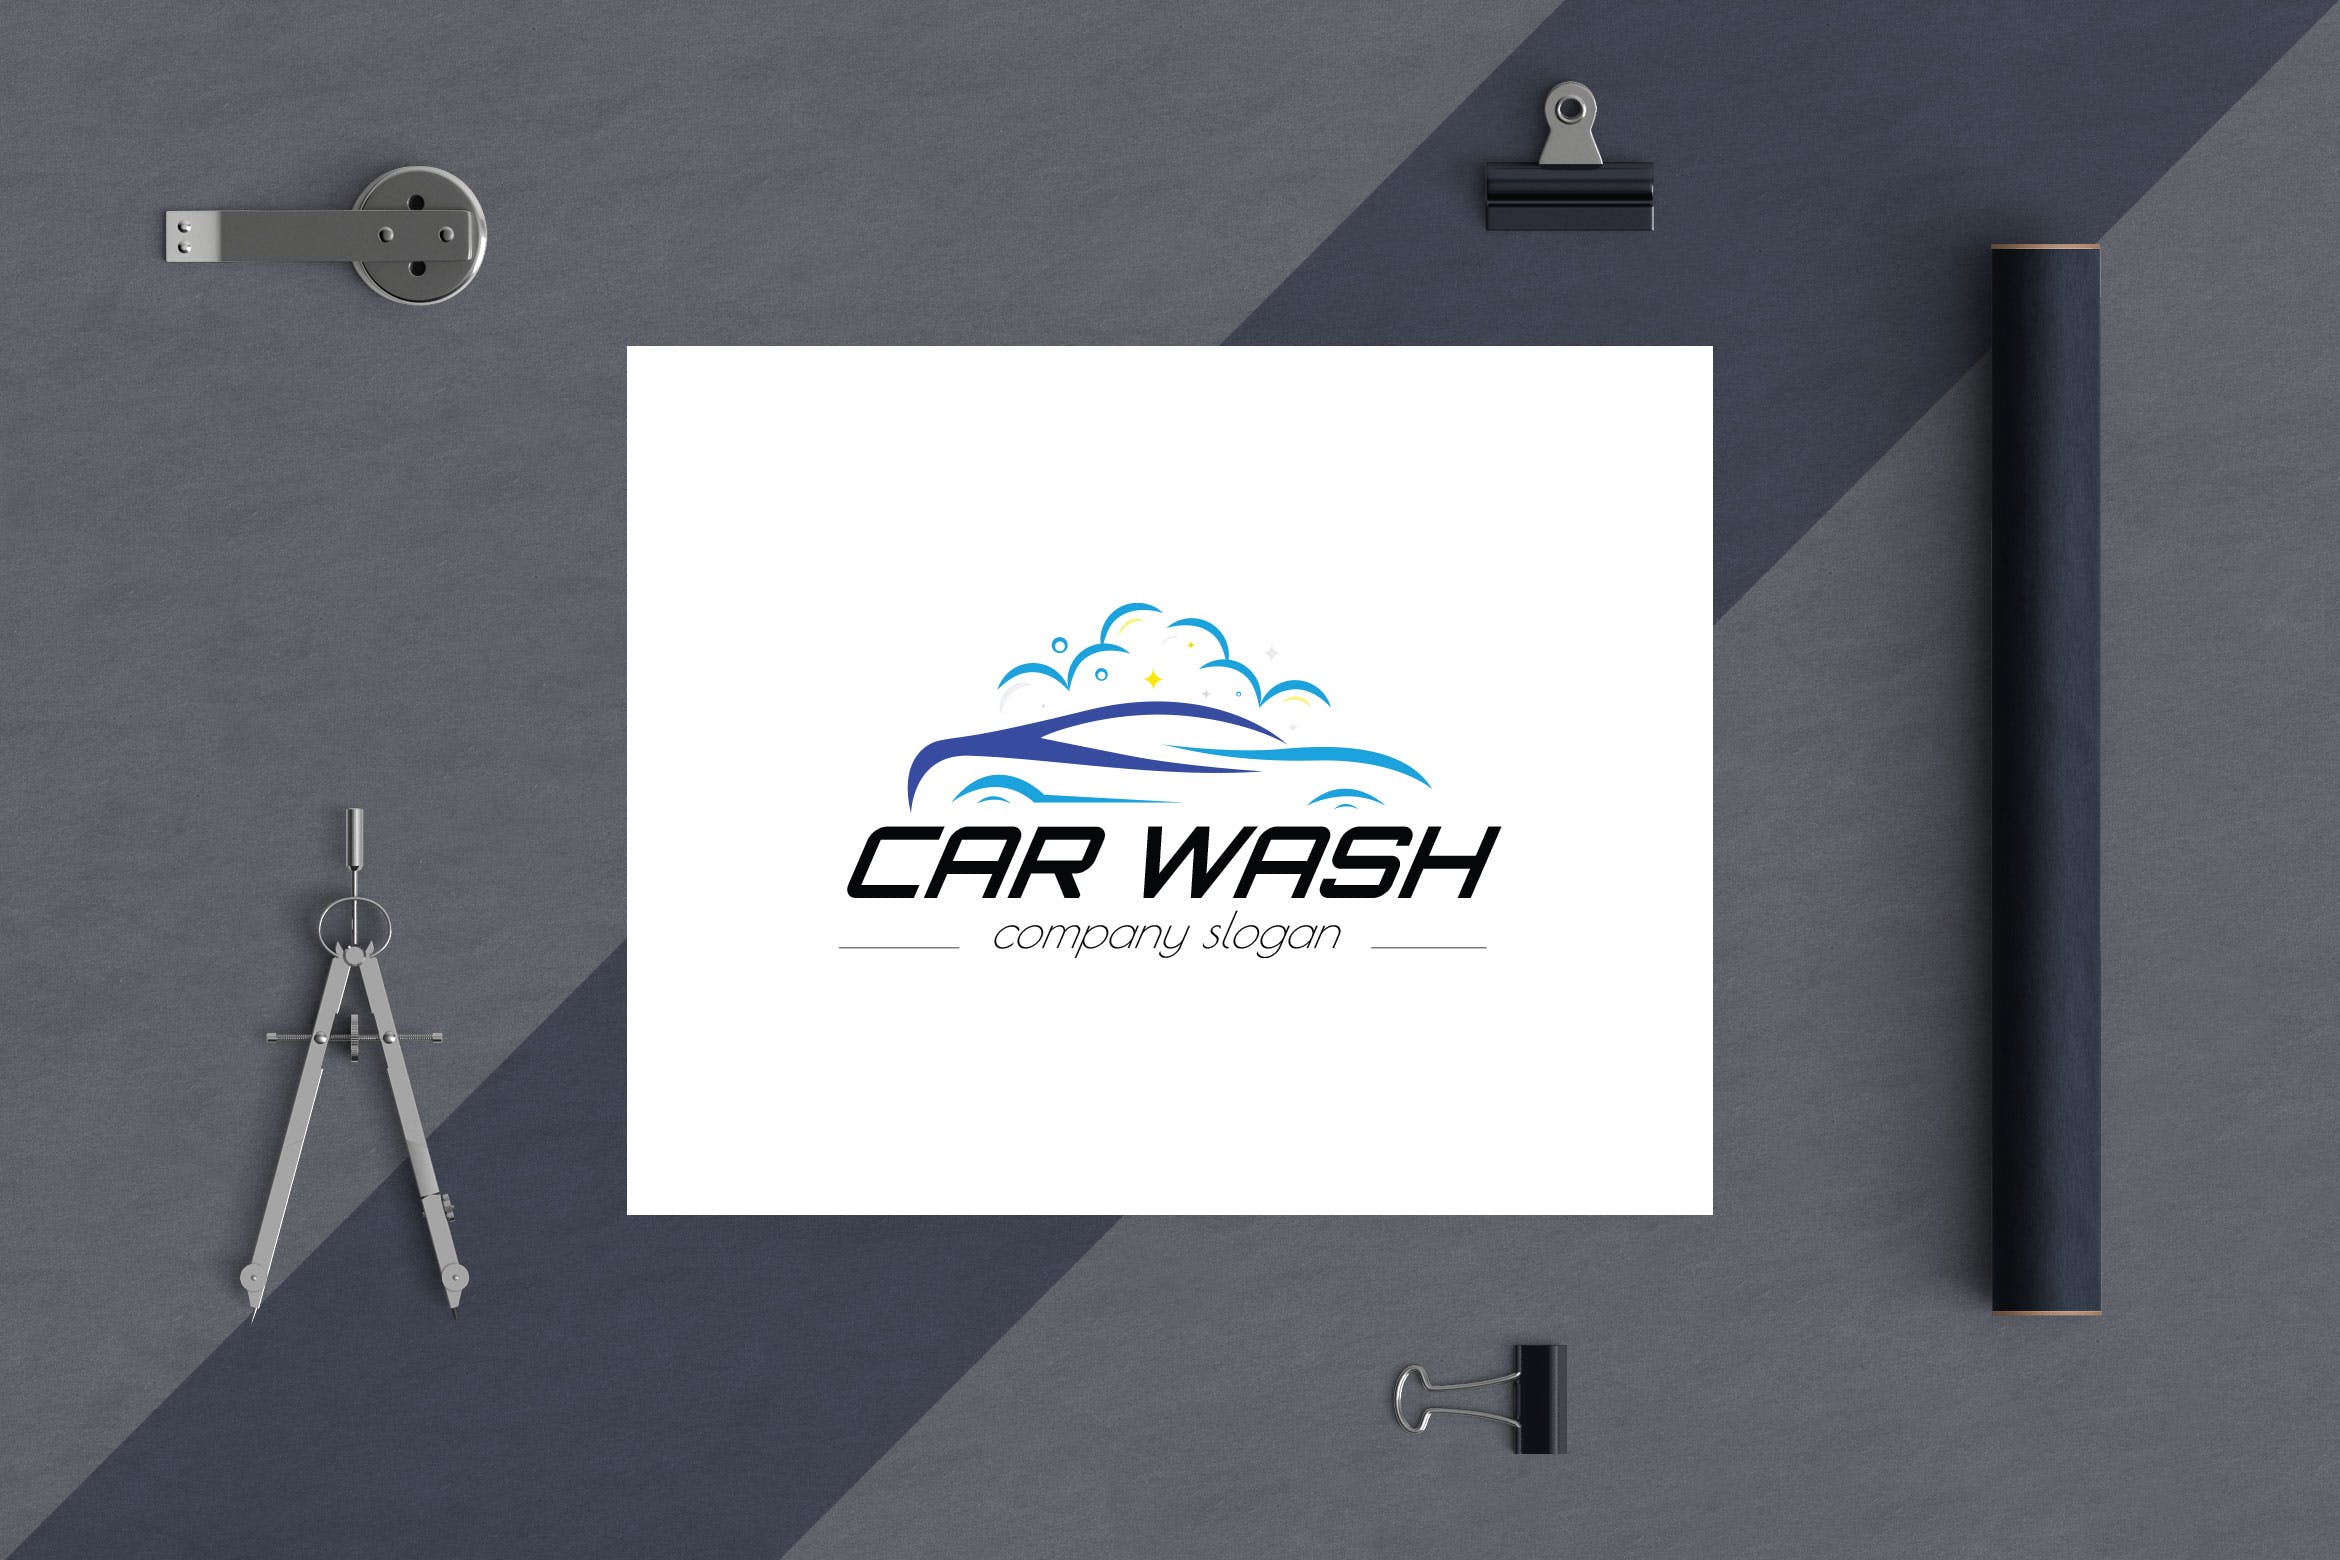 洗车店品牌Logo设计16设计网精选模板 Car Wash Business Logo Template插图